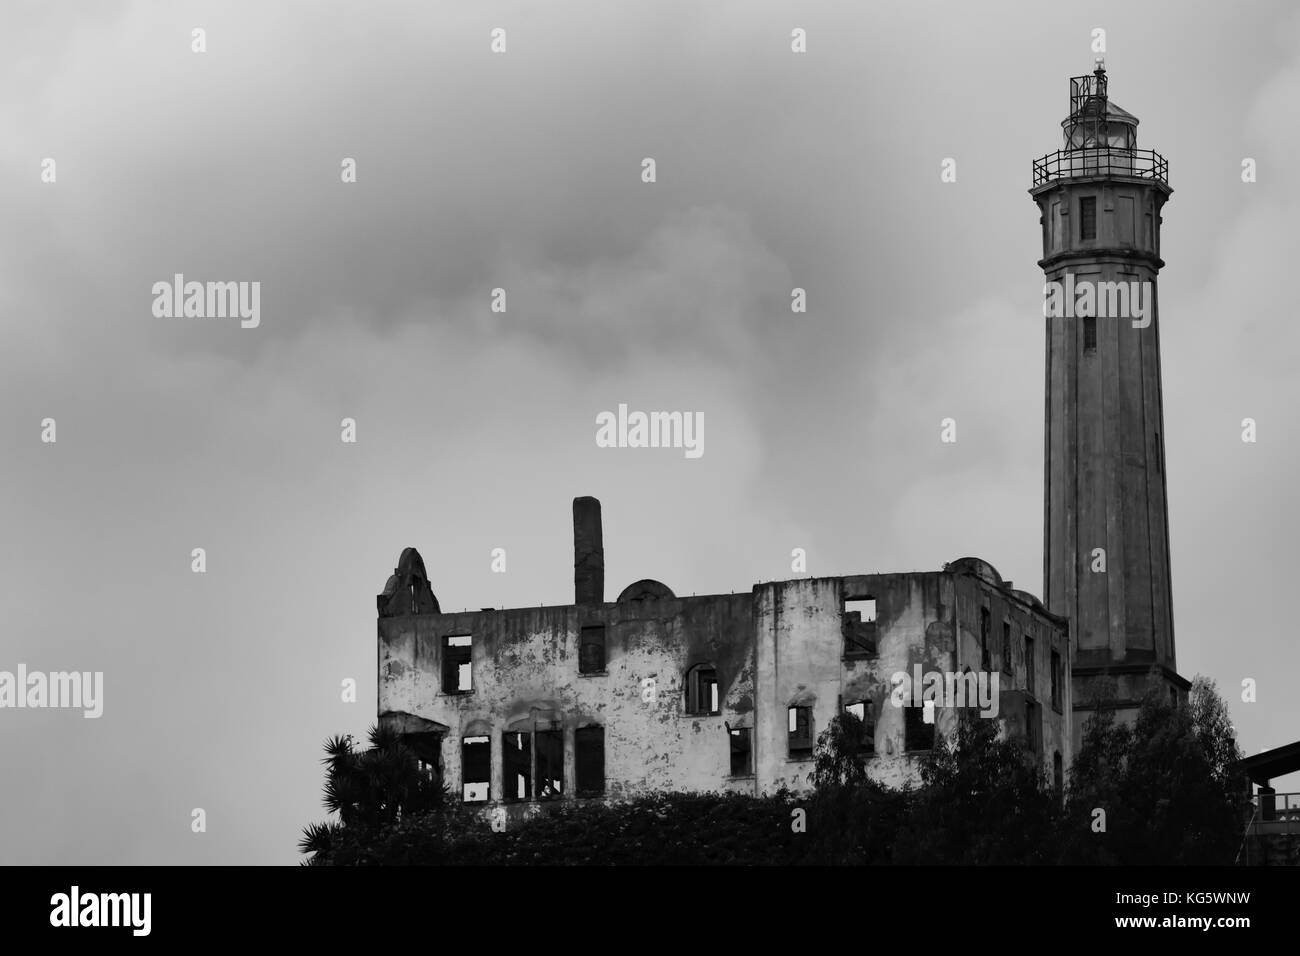 La Watch Tower et un bâtiment en ruine sur l'île d'Alcatraz, San Francisco, Californie Banque D'Images